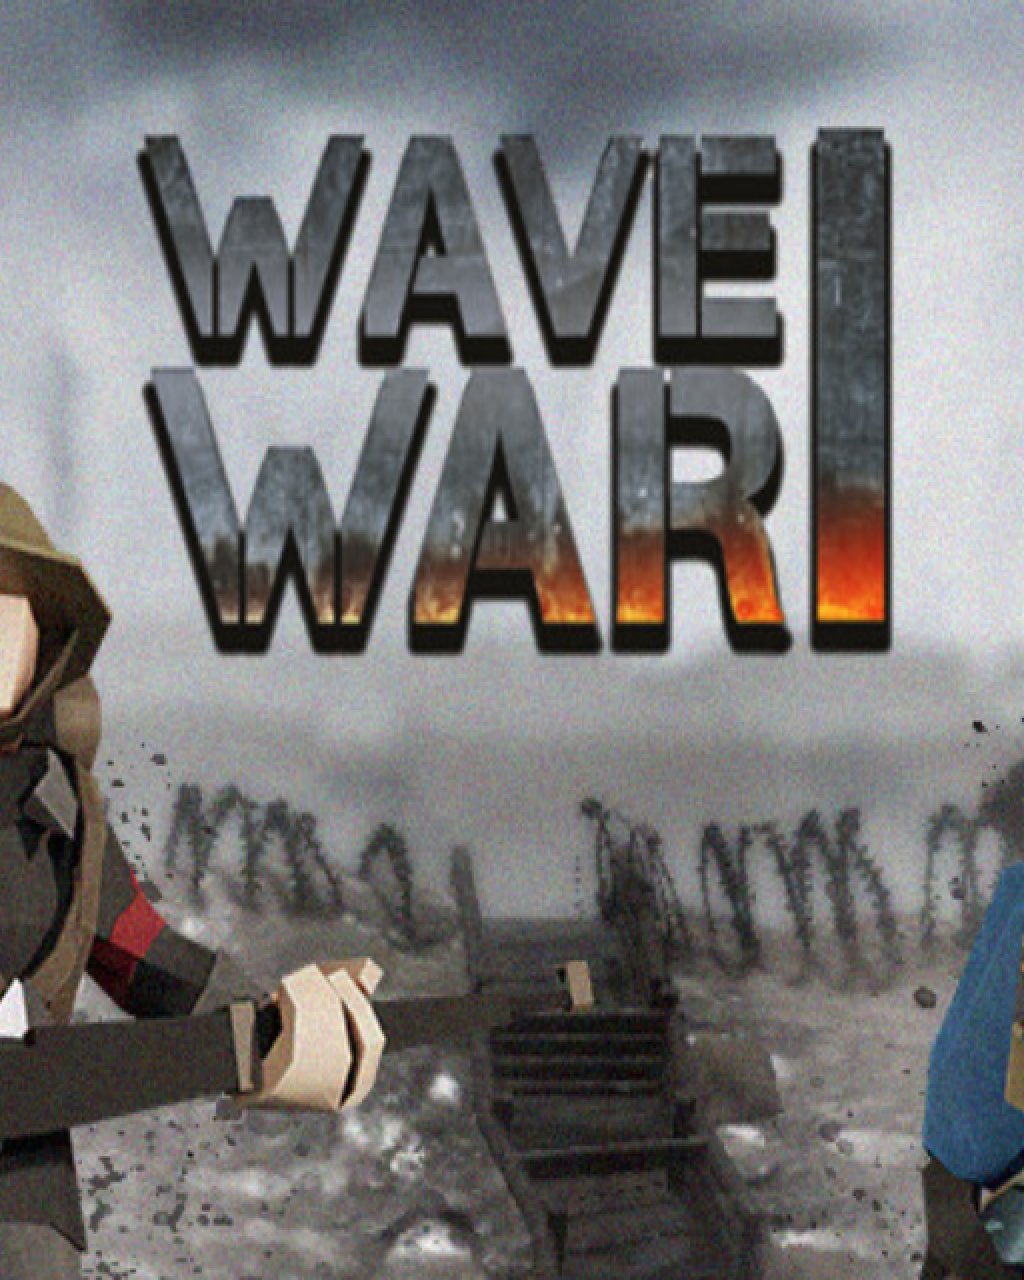 Wave War One